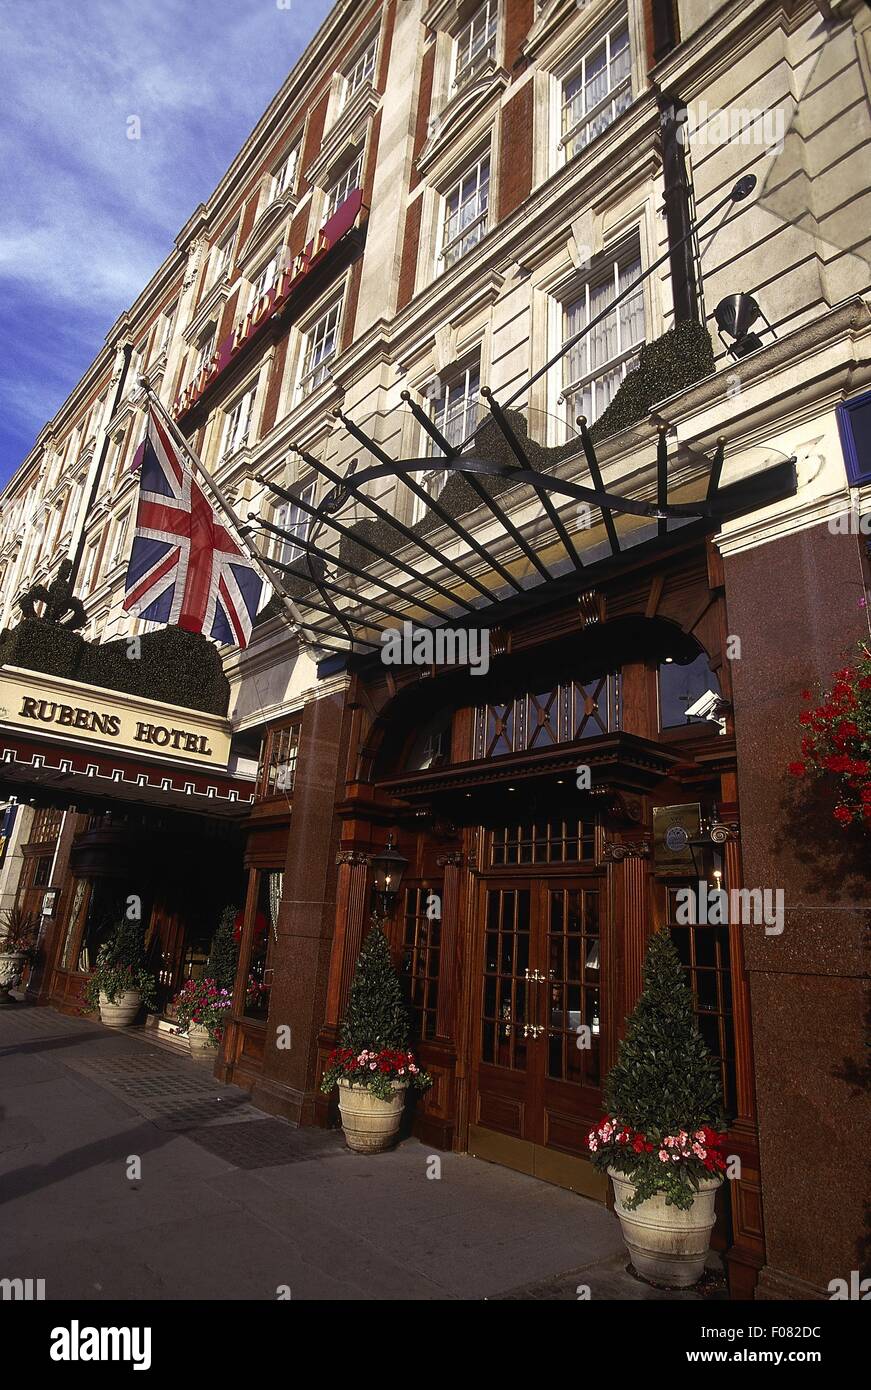 Entrance of Rubens hotel with Union Jack flag, London Stock Photo - Alamy